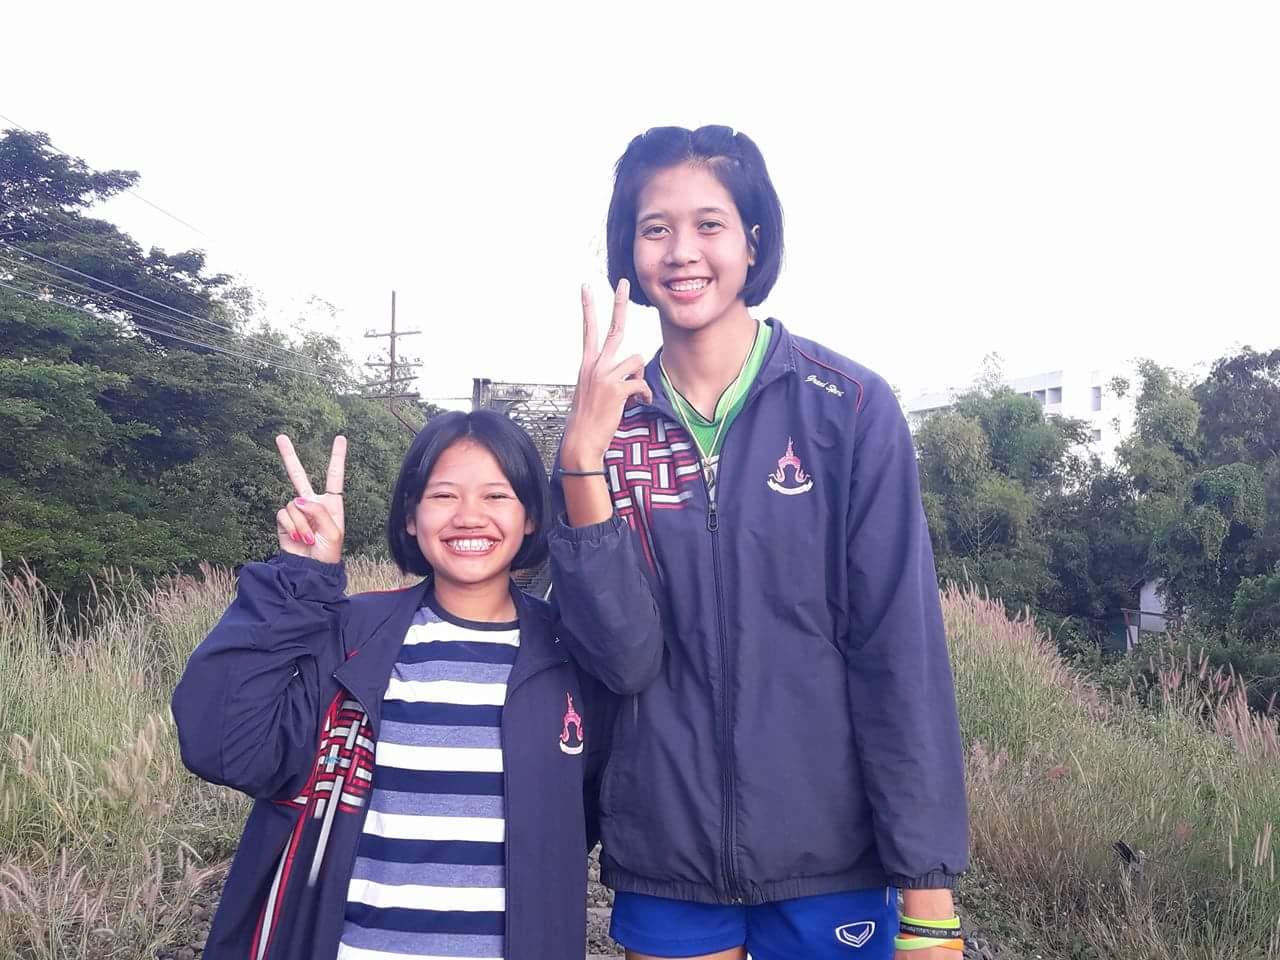 ดรีม อารีรักษ์ อัมภรัตน์ นักวอลเลย์บอลสาวไทยที่มีความสูงเกิน 2 เมตร 2